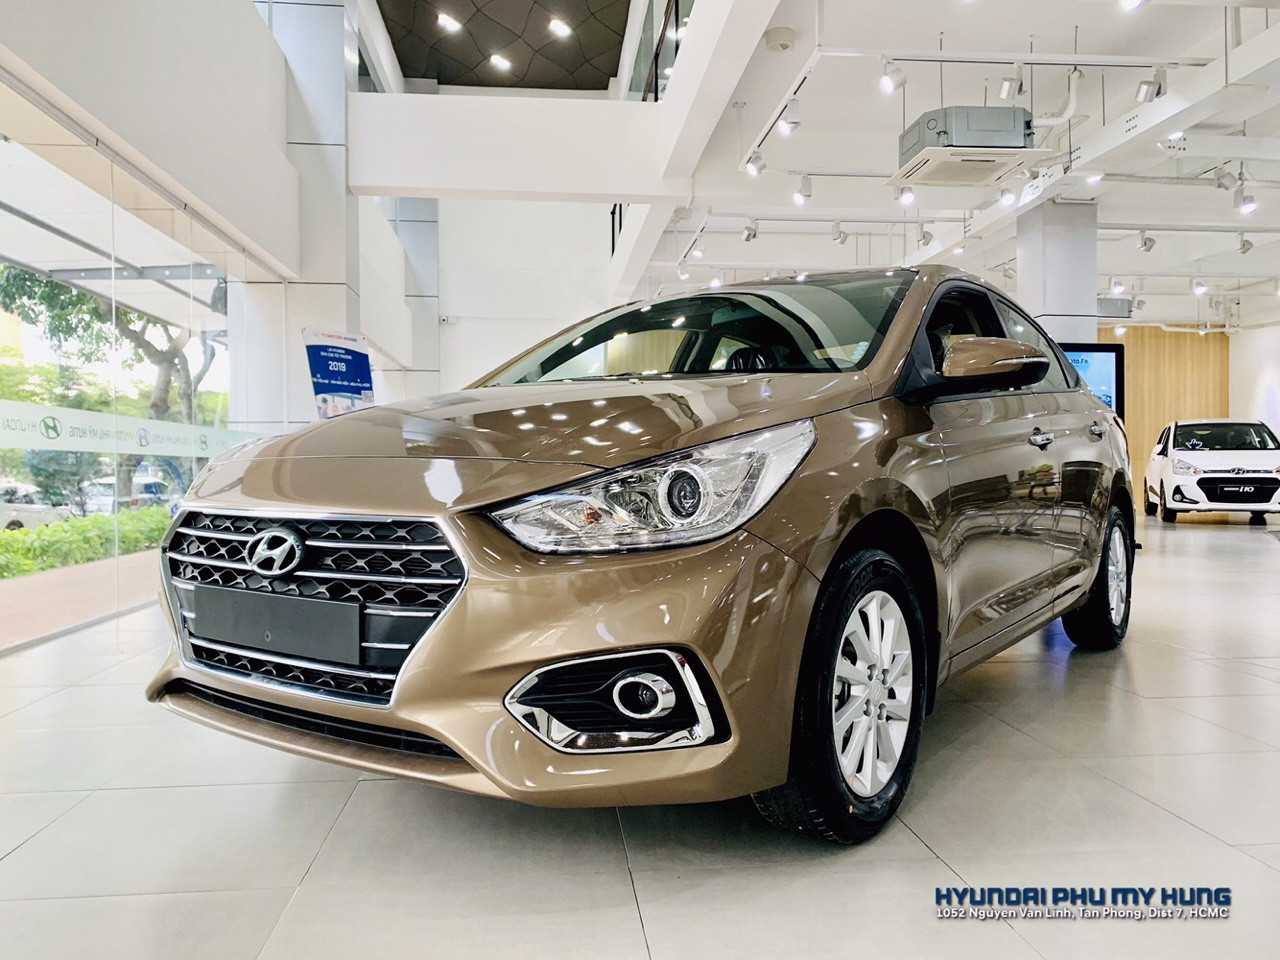 Hyundai Accent 2019 MT 14 Vàng Cát Ảnh Chụp Thực Tế Tại Hyundai Quận 7